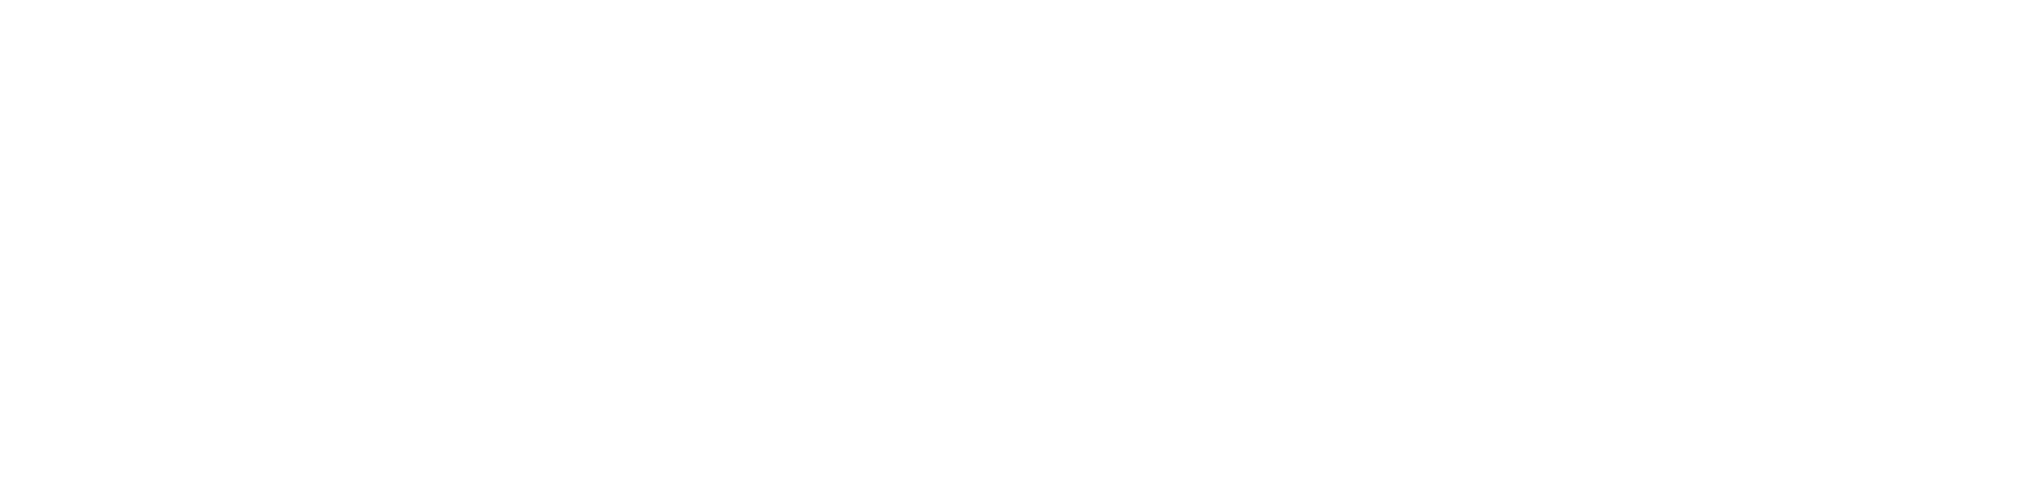 insight-led-logo